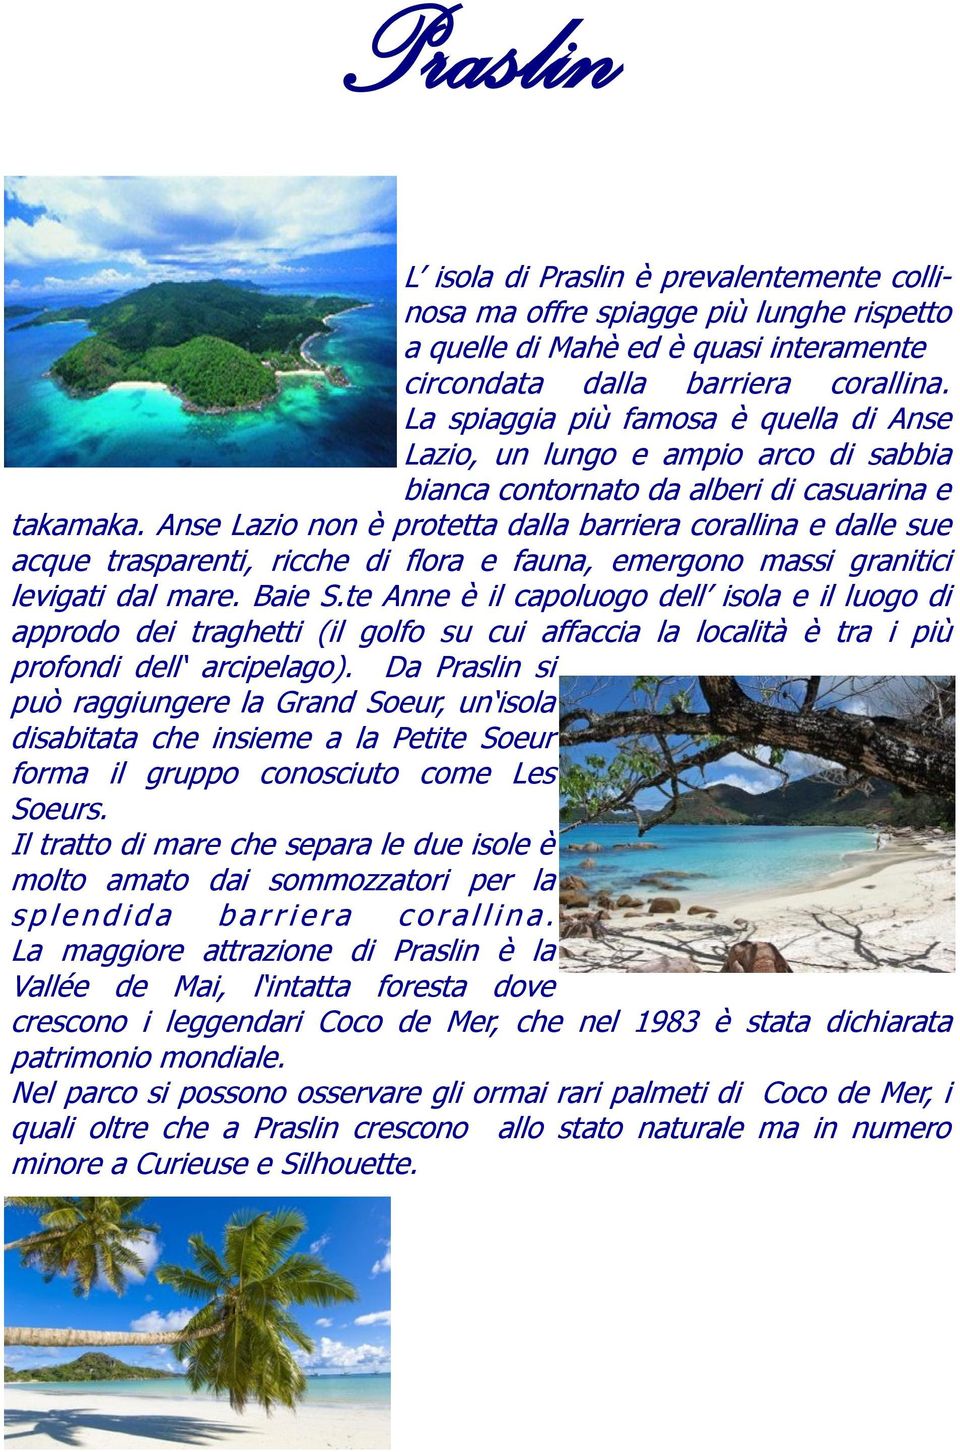 Anse Lazio non è protetta dalla barriera corallina e dalle sue acque trasparenti, ricche di flora e fauna, emergono massi granitici levigati dal mare. Baie S.